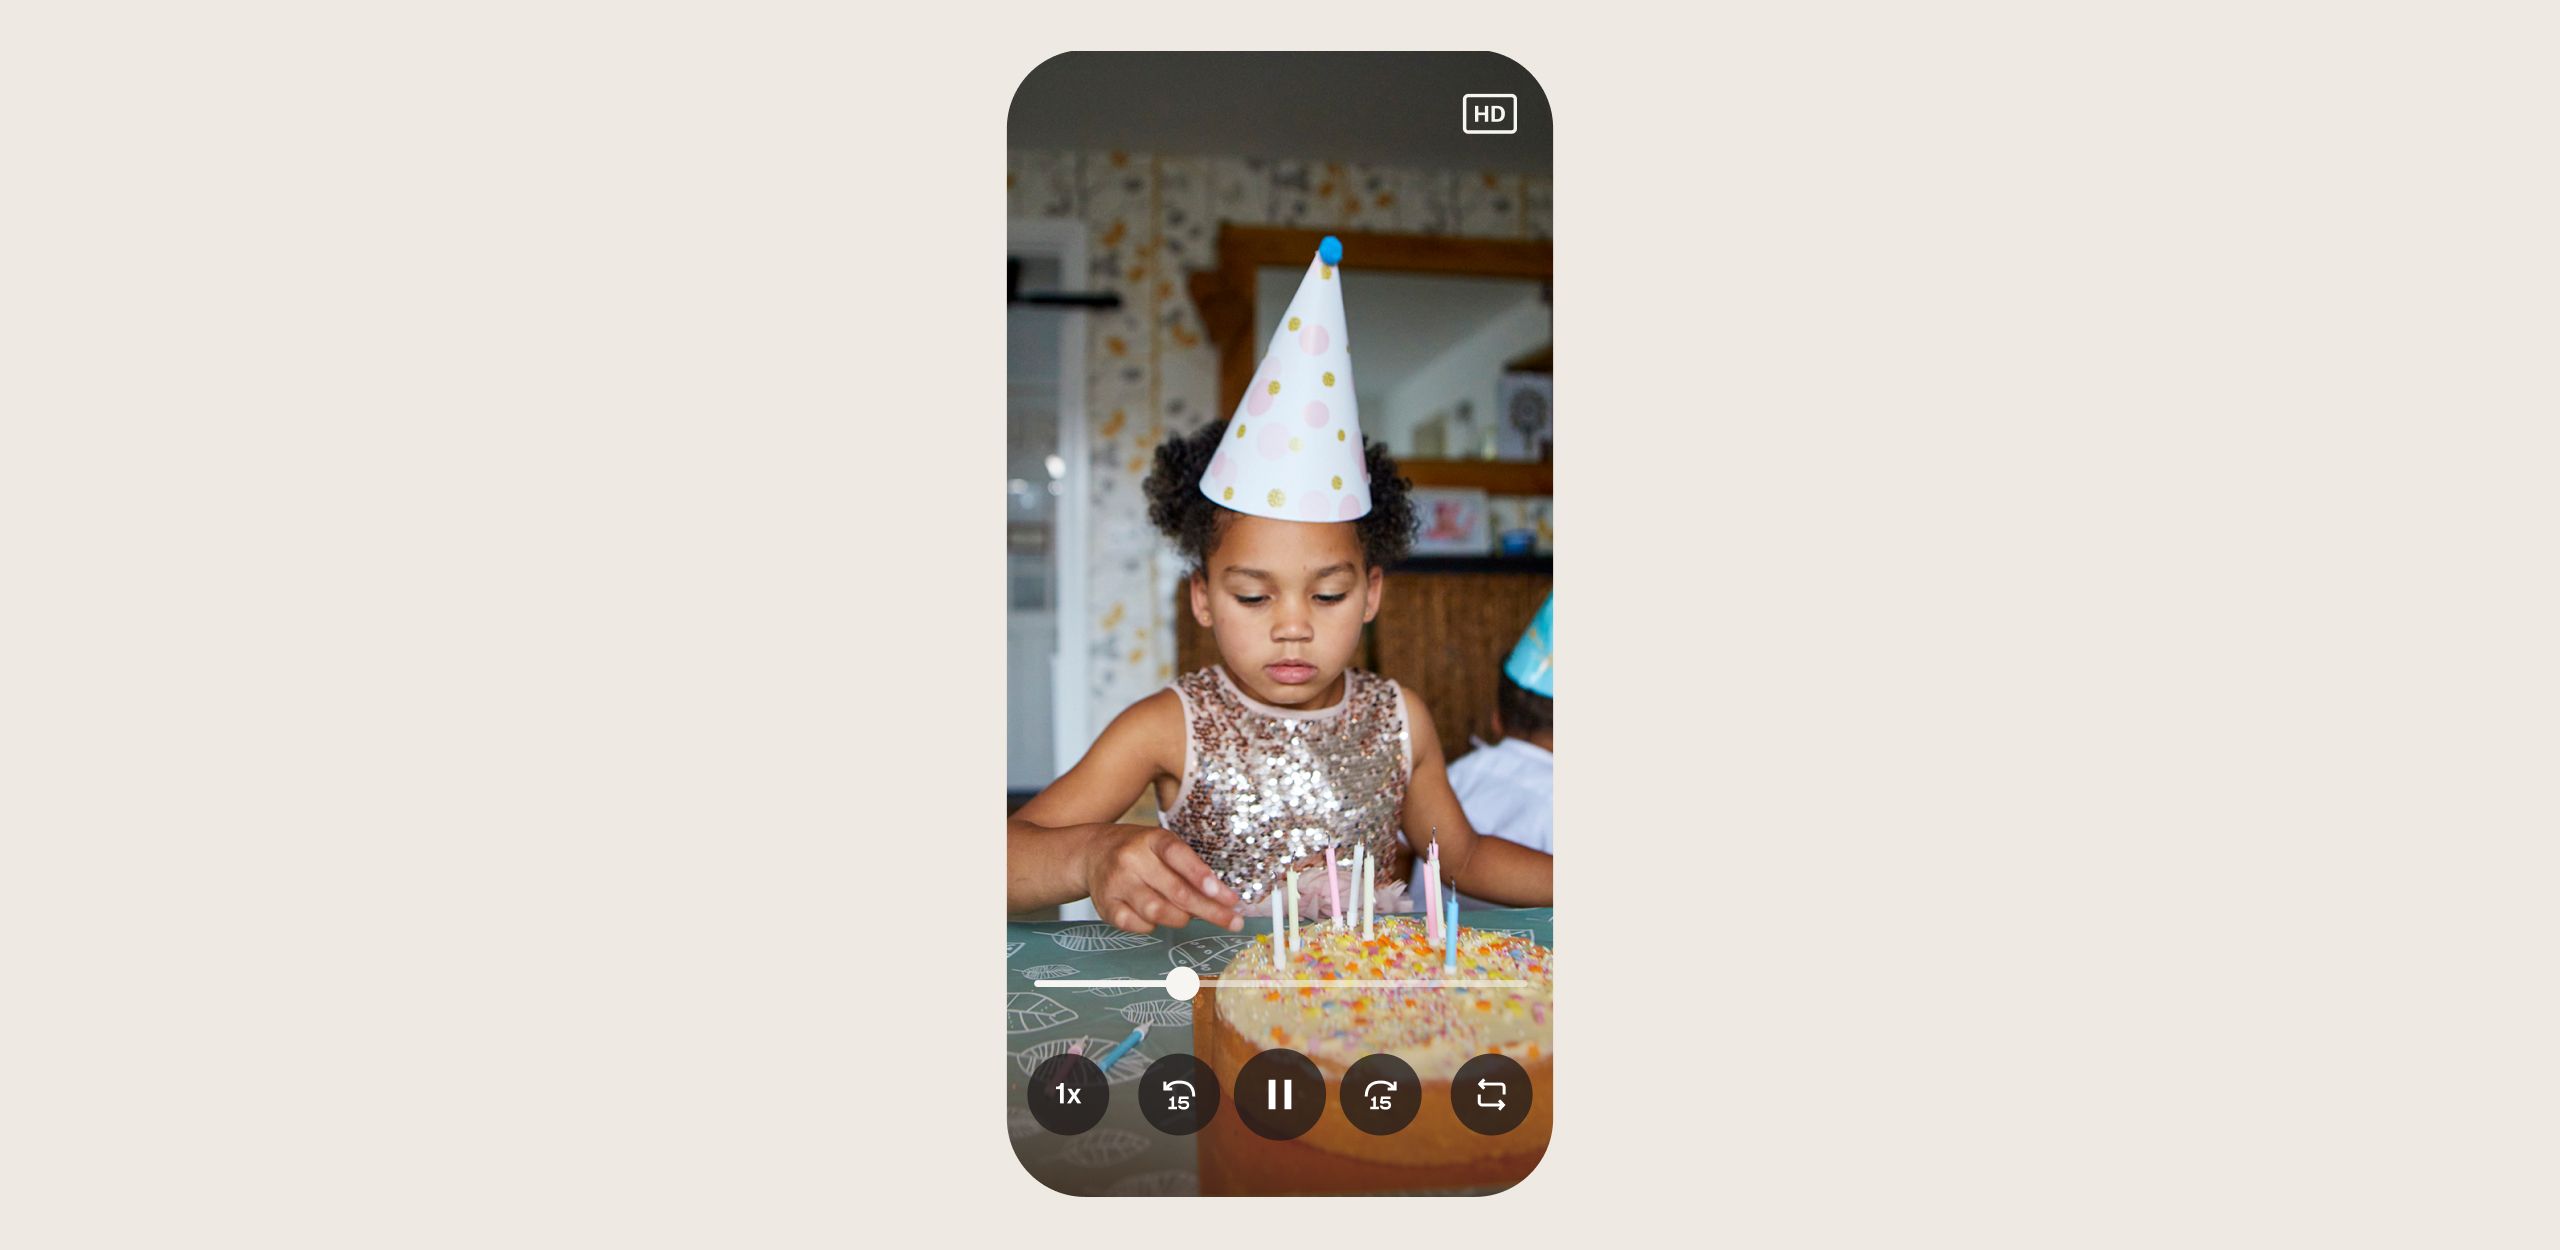 Interface do usuário do produto mostrando uma captura de tela de um vídeo reproduzido no aplicativo móvel